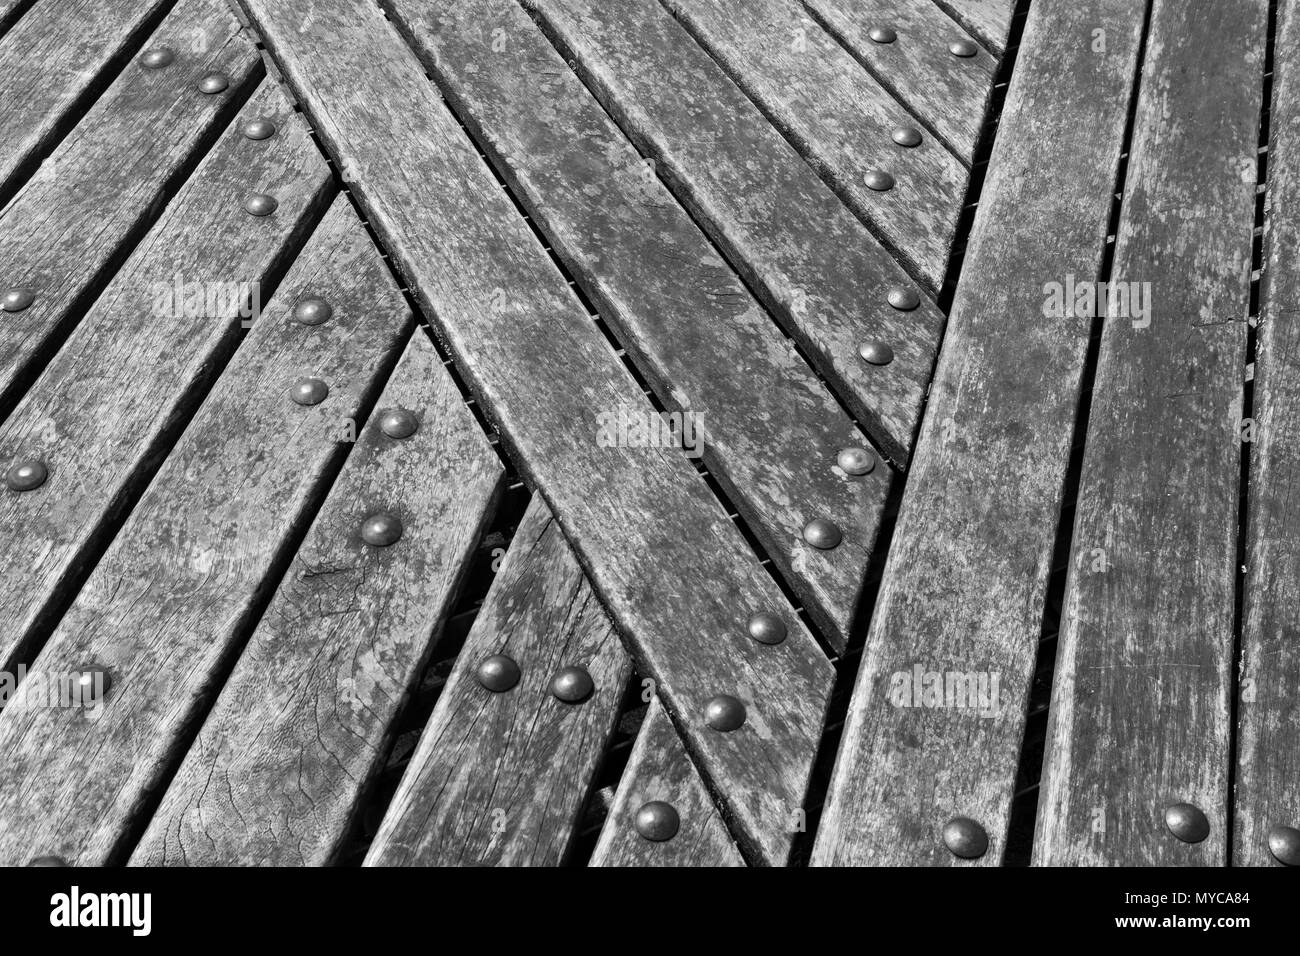 Astratto-ish Conversione monocromatica di immagine a colori delle assicelle di legno formando alcune pubbliche posti a sedere presso il limone Quay, Truro, Cornwall. Foto Stock